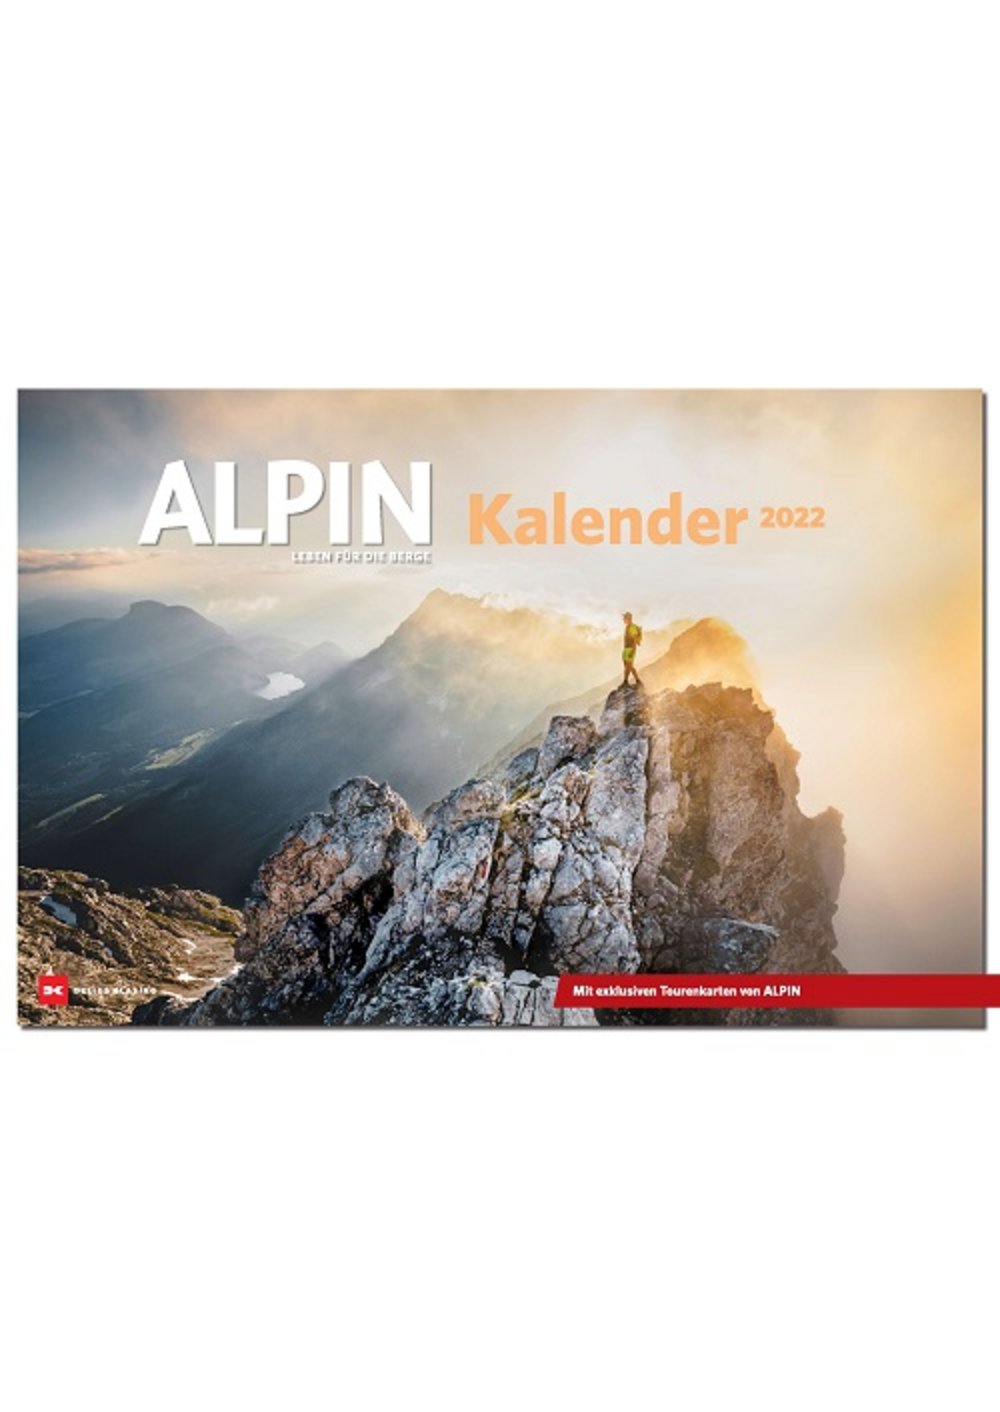 ALPIN Kalender 2022